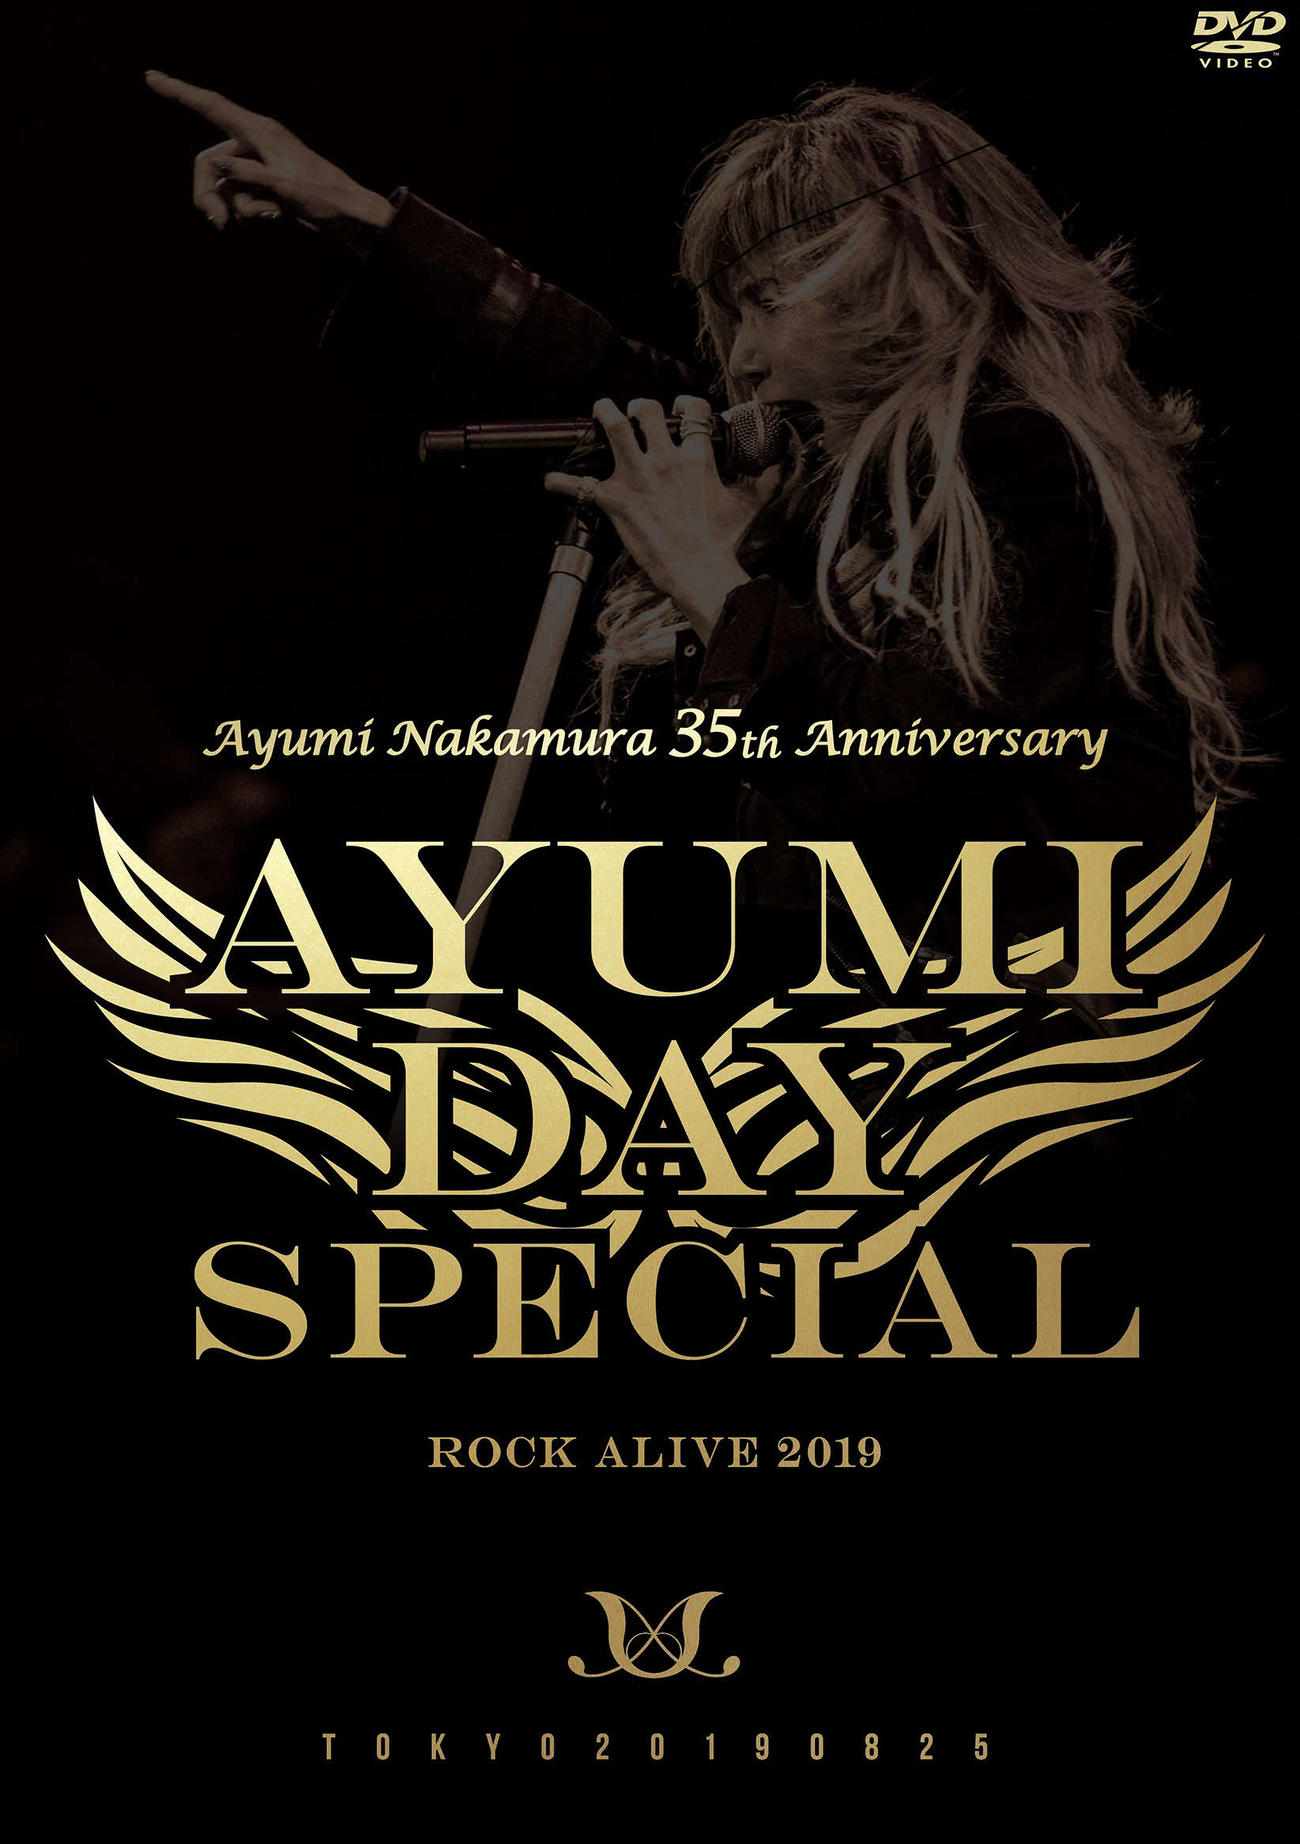 30日に発売される、中村あゆみのデビュー35周年記念ライブDVD